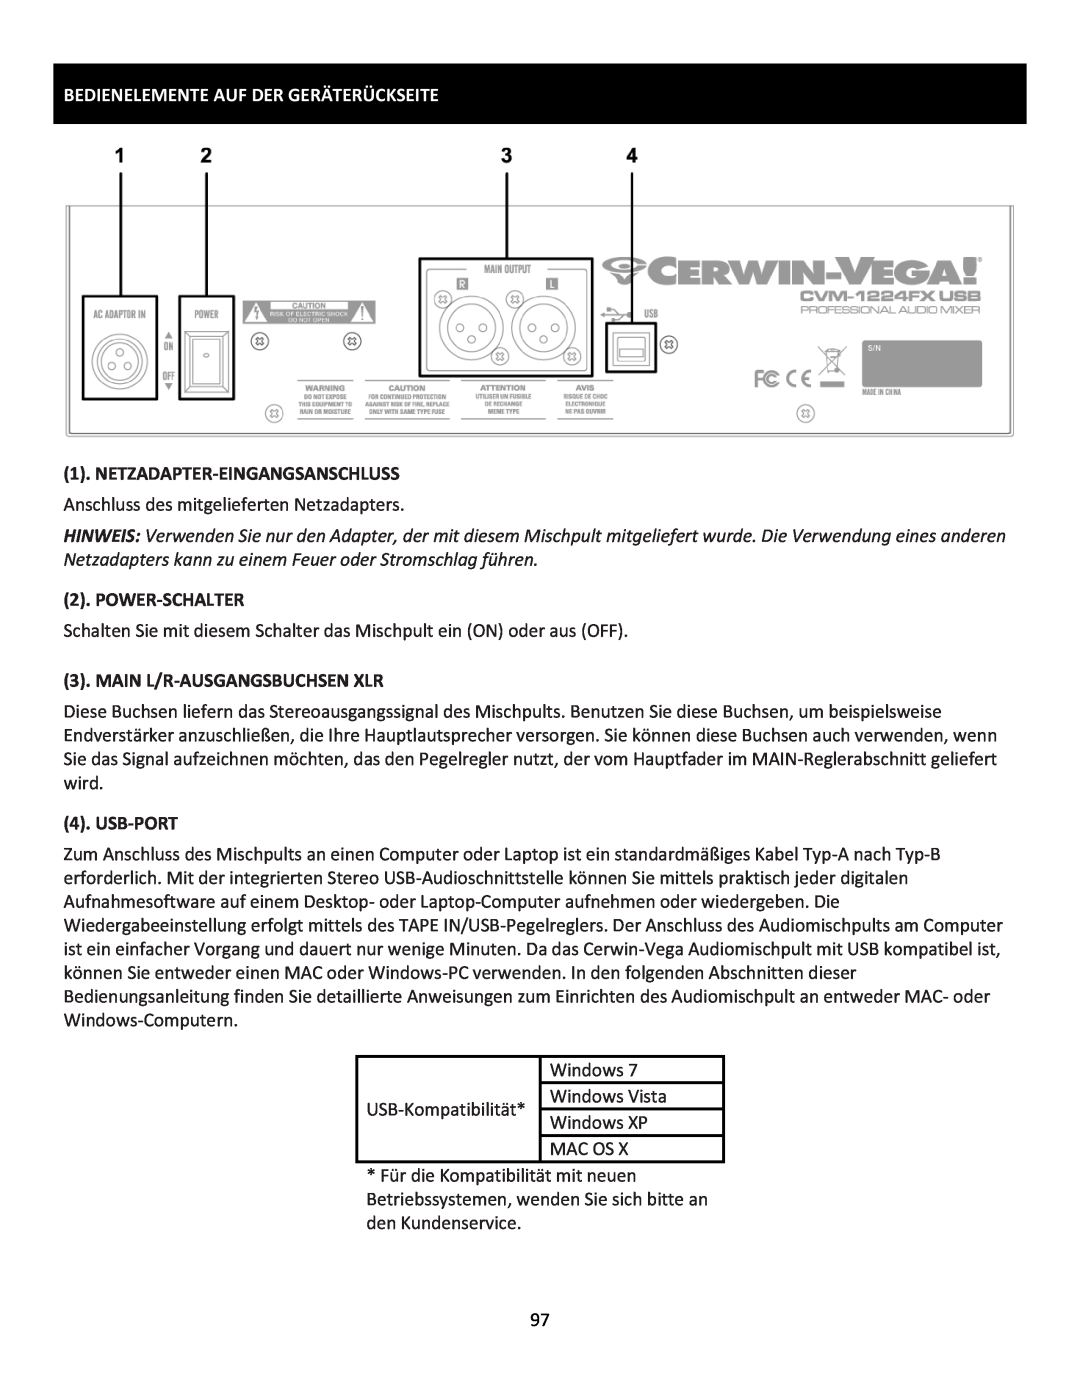 Cerwin-Vega CVM-1224FXUSB Bedienelemente Auf Der Geräterückseite, Netzadapter-Eingangsanschluss, Power-Schalter, Usb-Port 